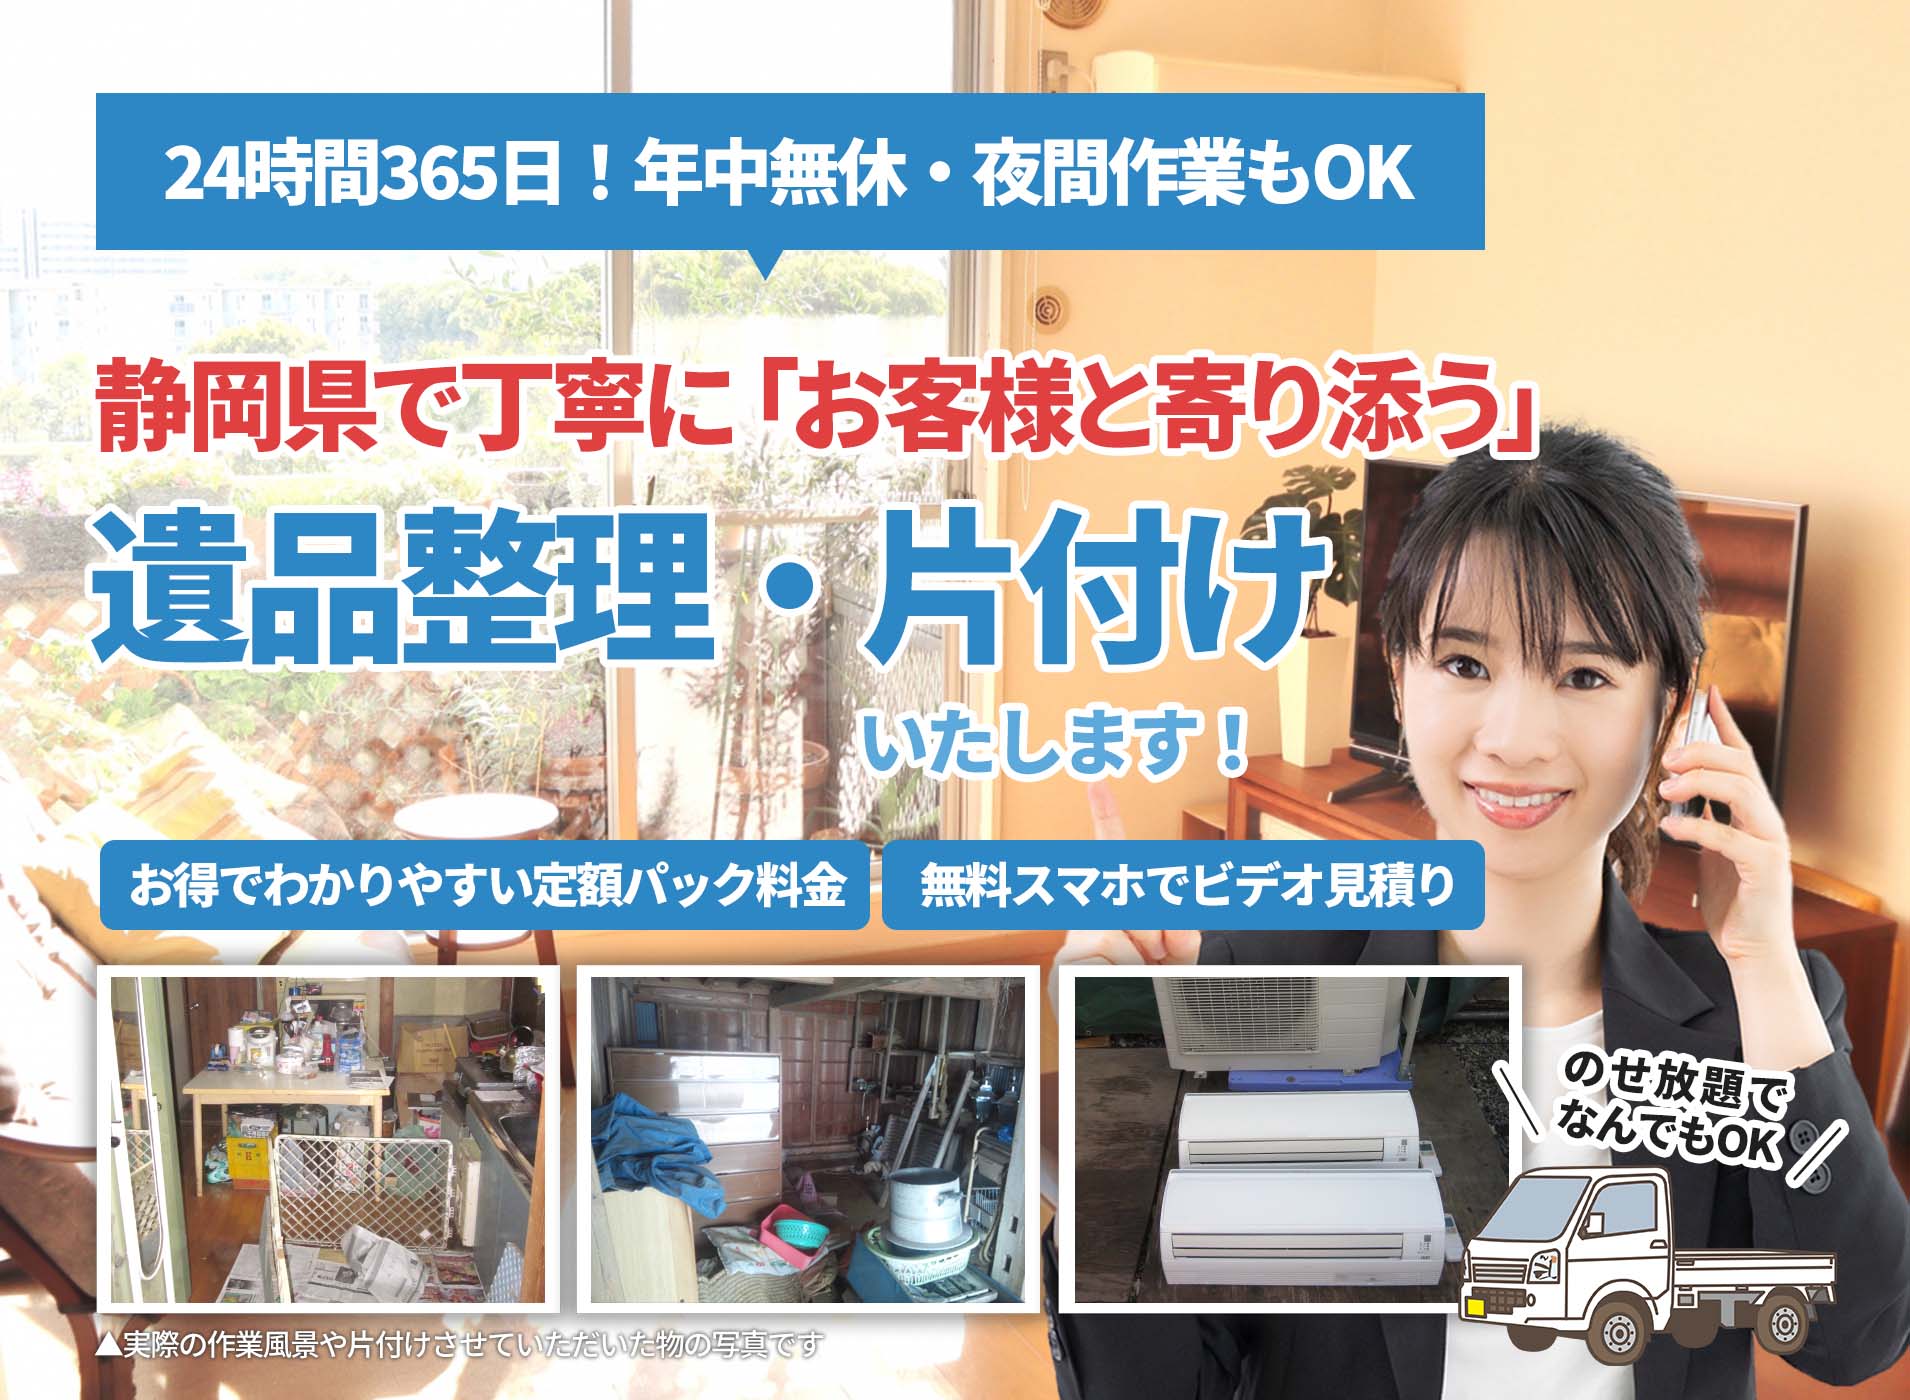 静岡県で丁寧に「お客様と寄り添う」ＬＴＪ遺品整理隊の遺品整理サービス